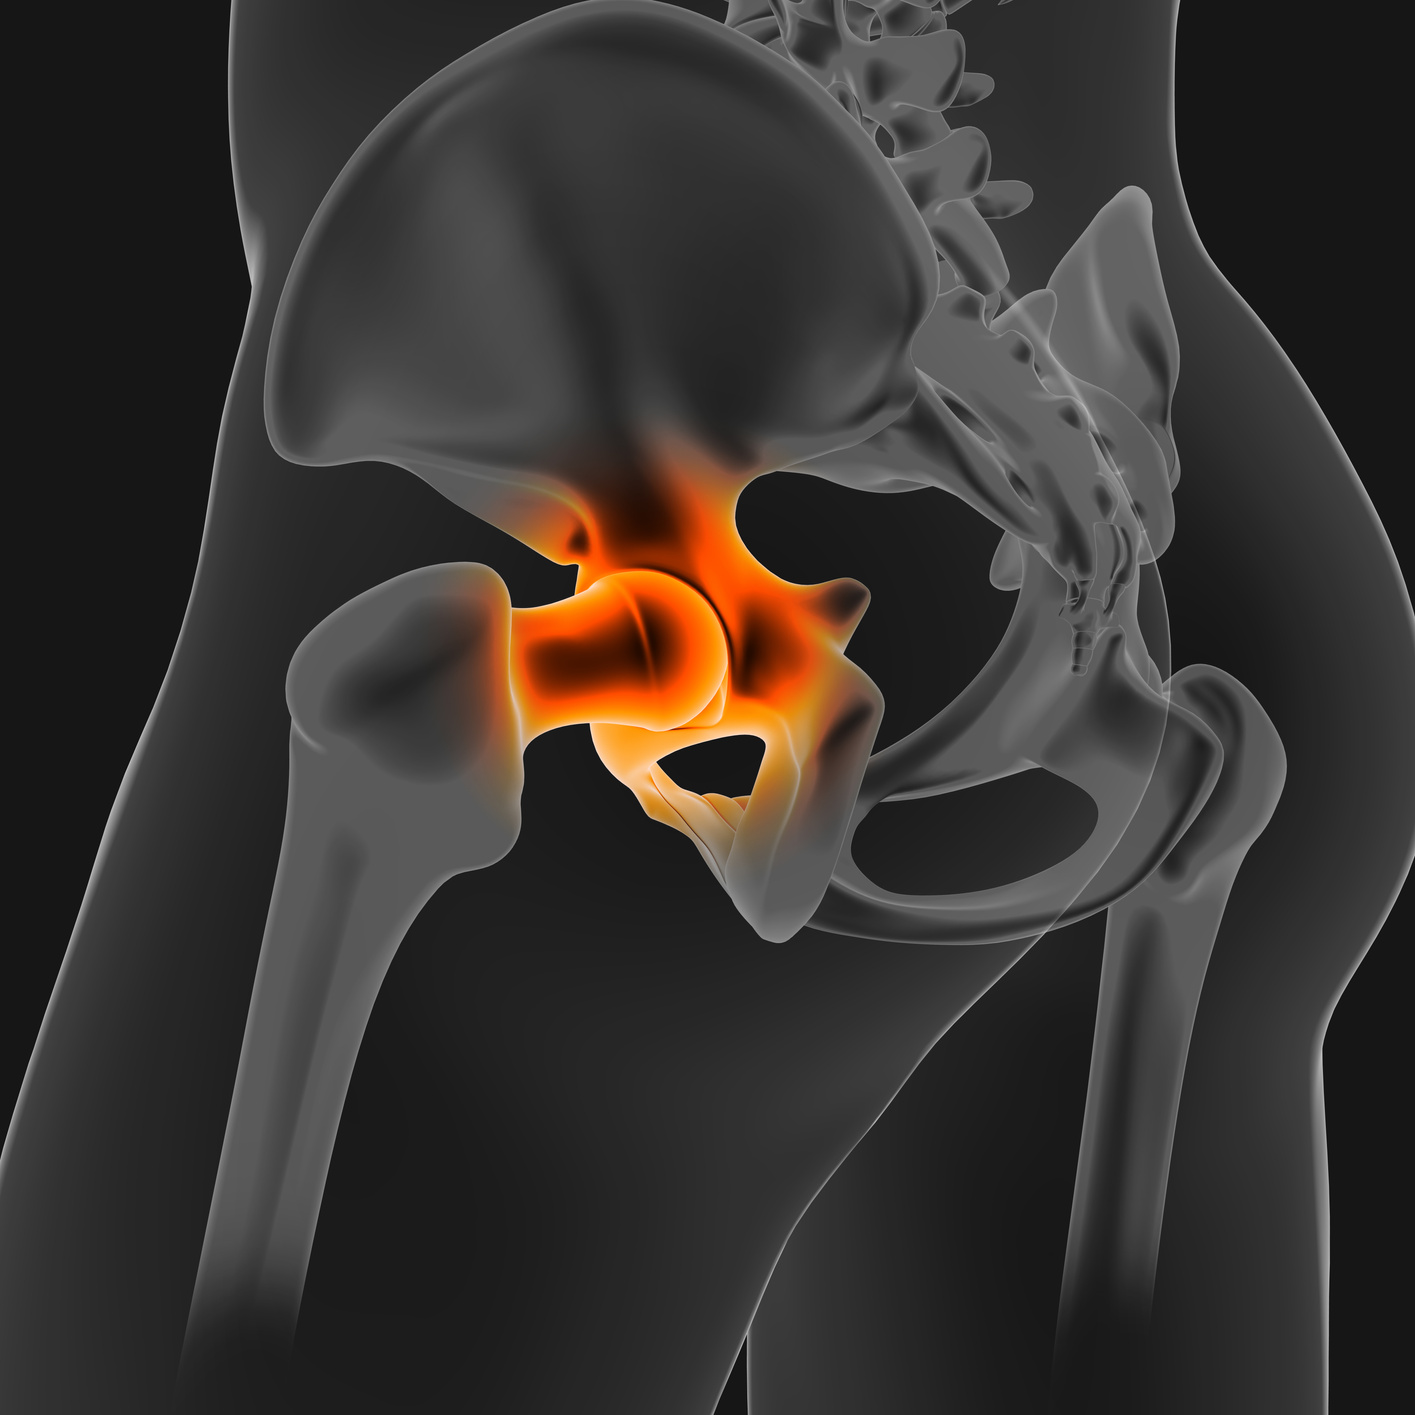 3D_Illustration_hip_joint_painful_skeleton_medical_concept